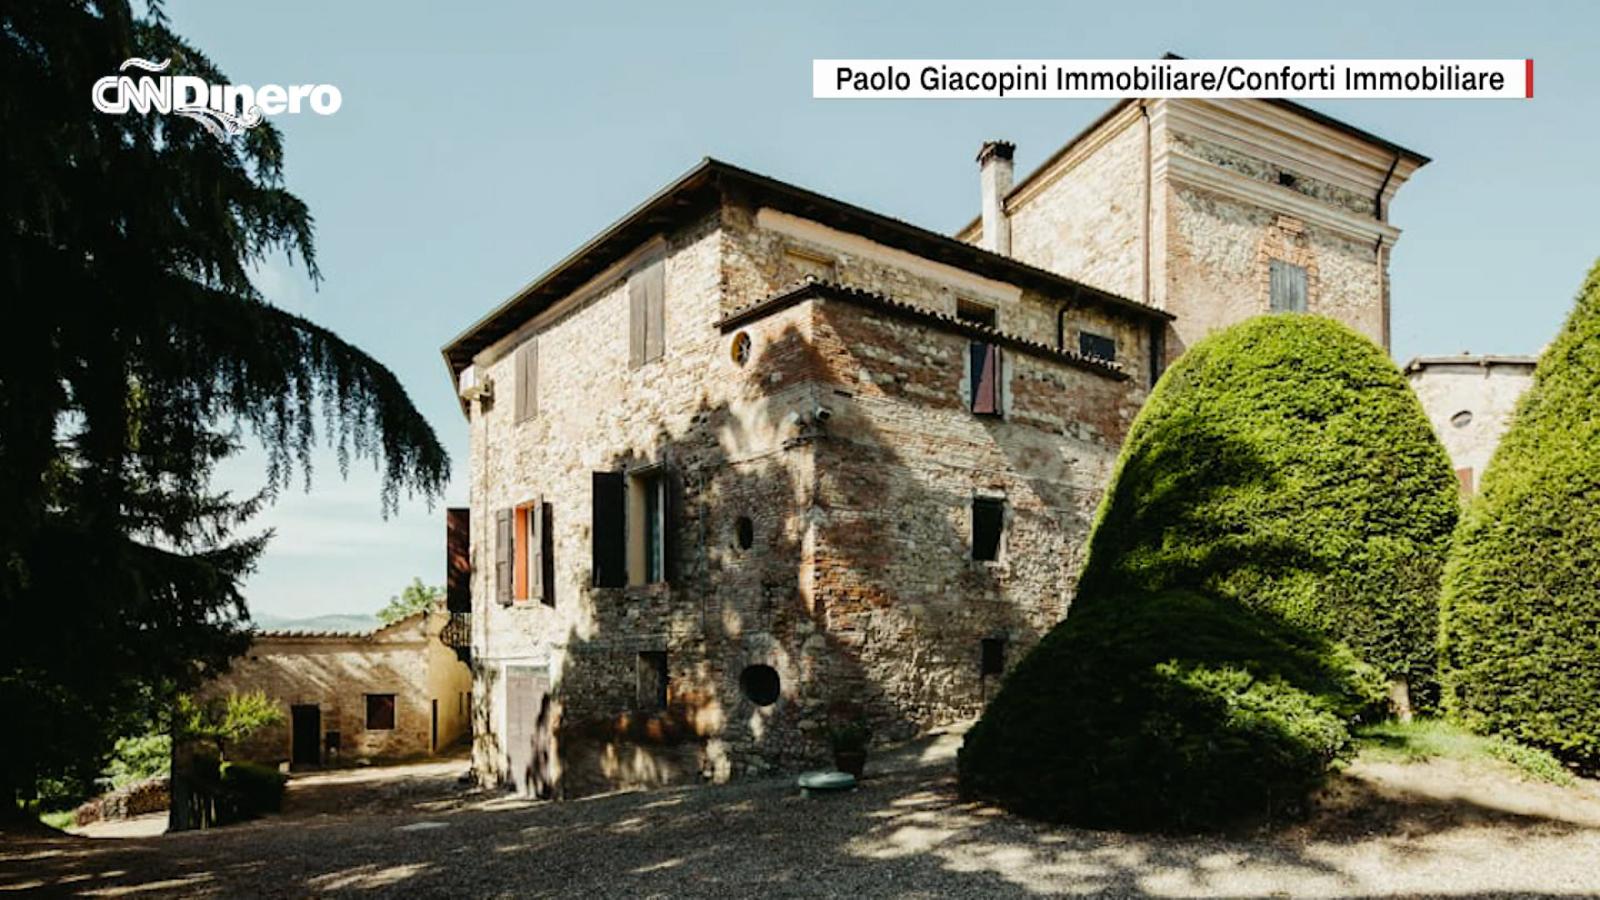 Castello medievale nel nord Italia in vendita per 2 milioni di dollari